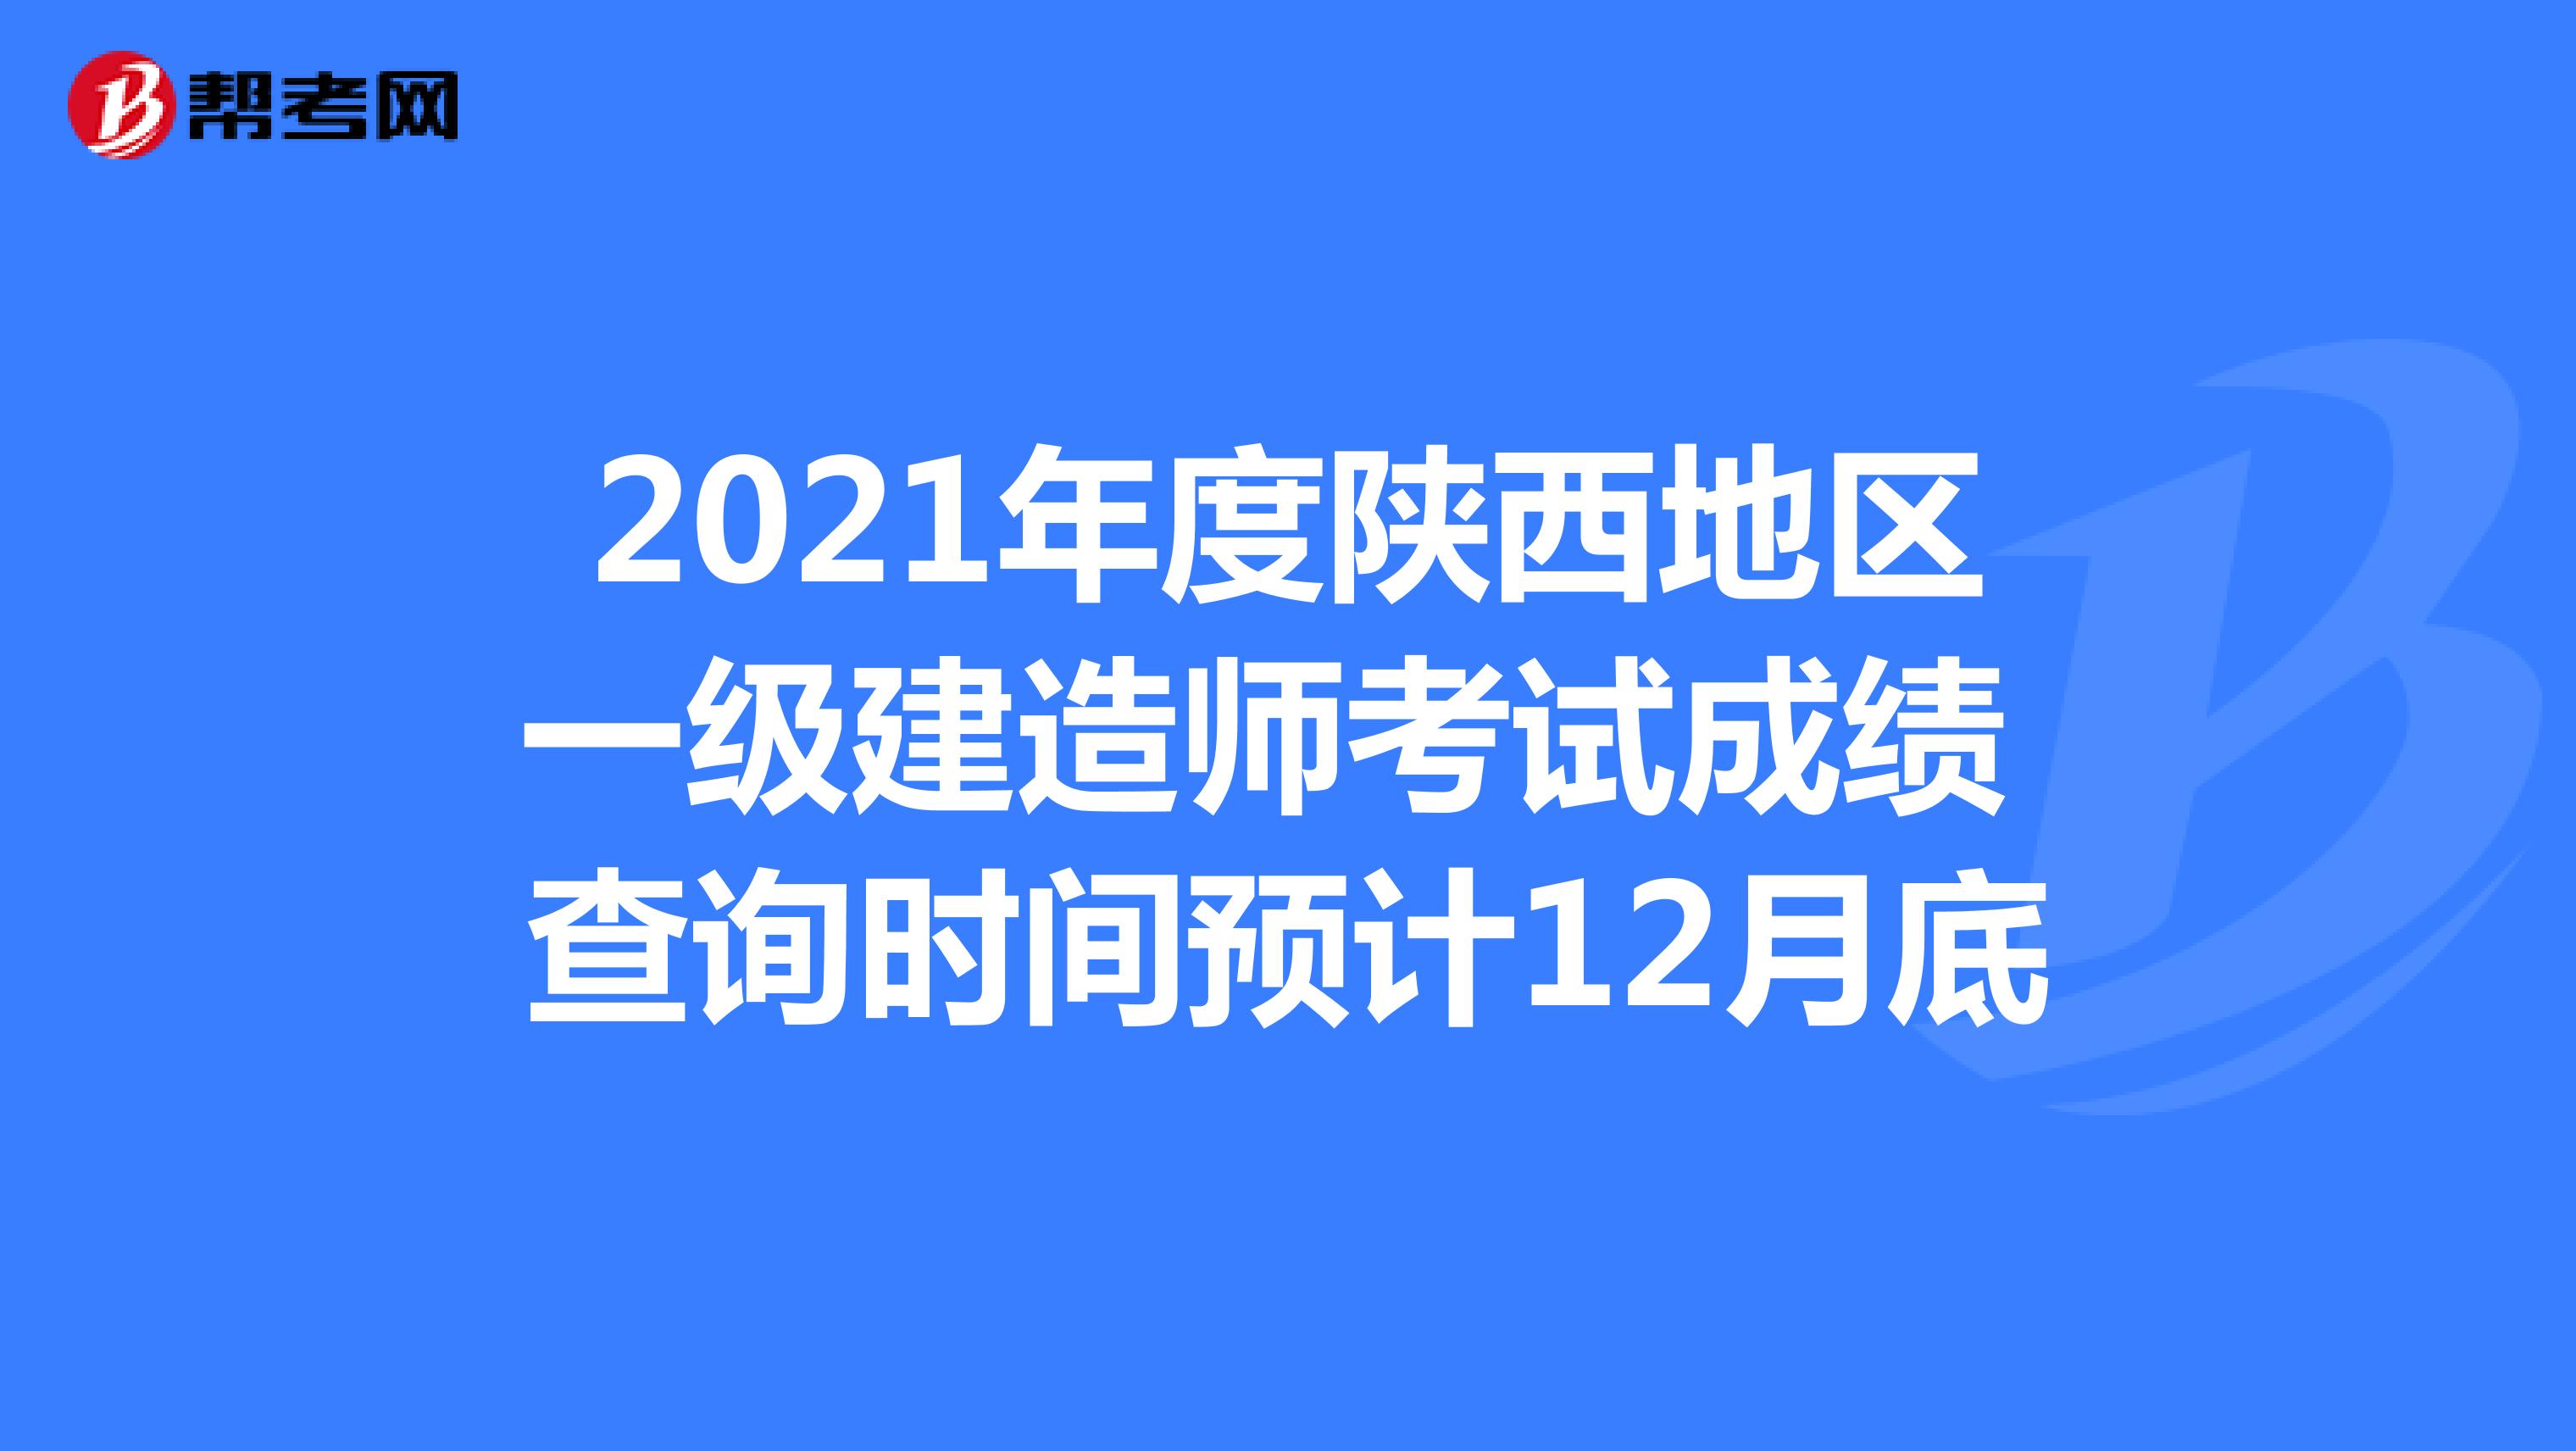 2021年度陕西地区一级建造师考试成绩 查询时间预计12月底